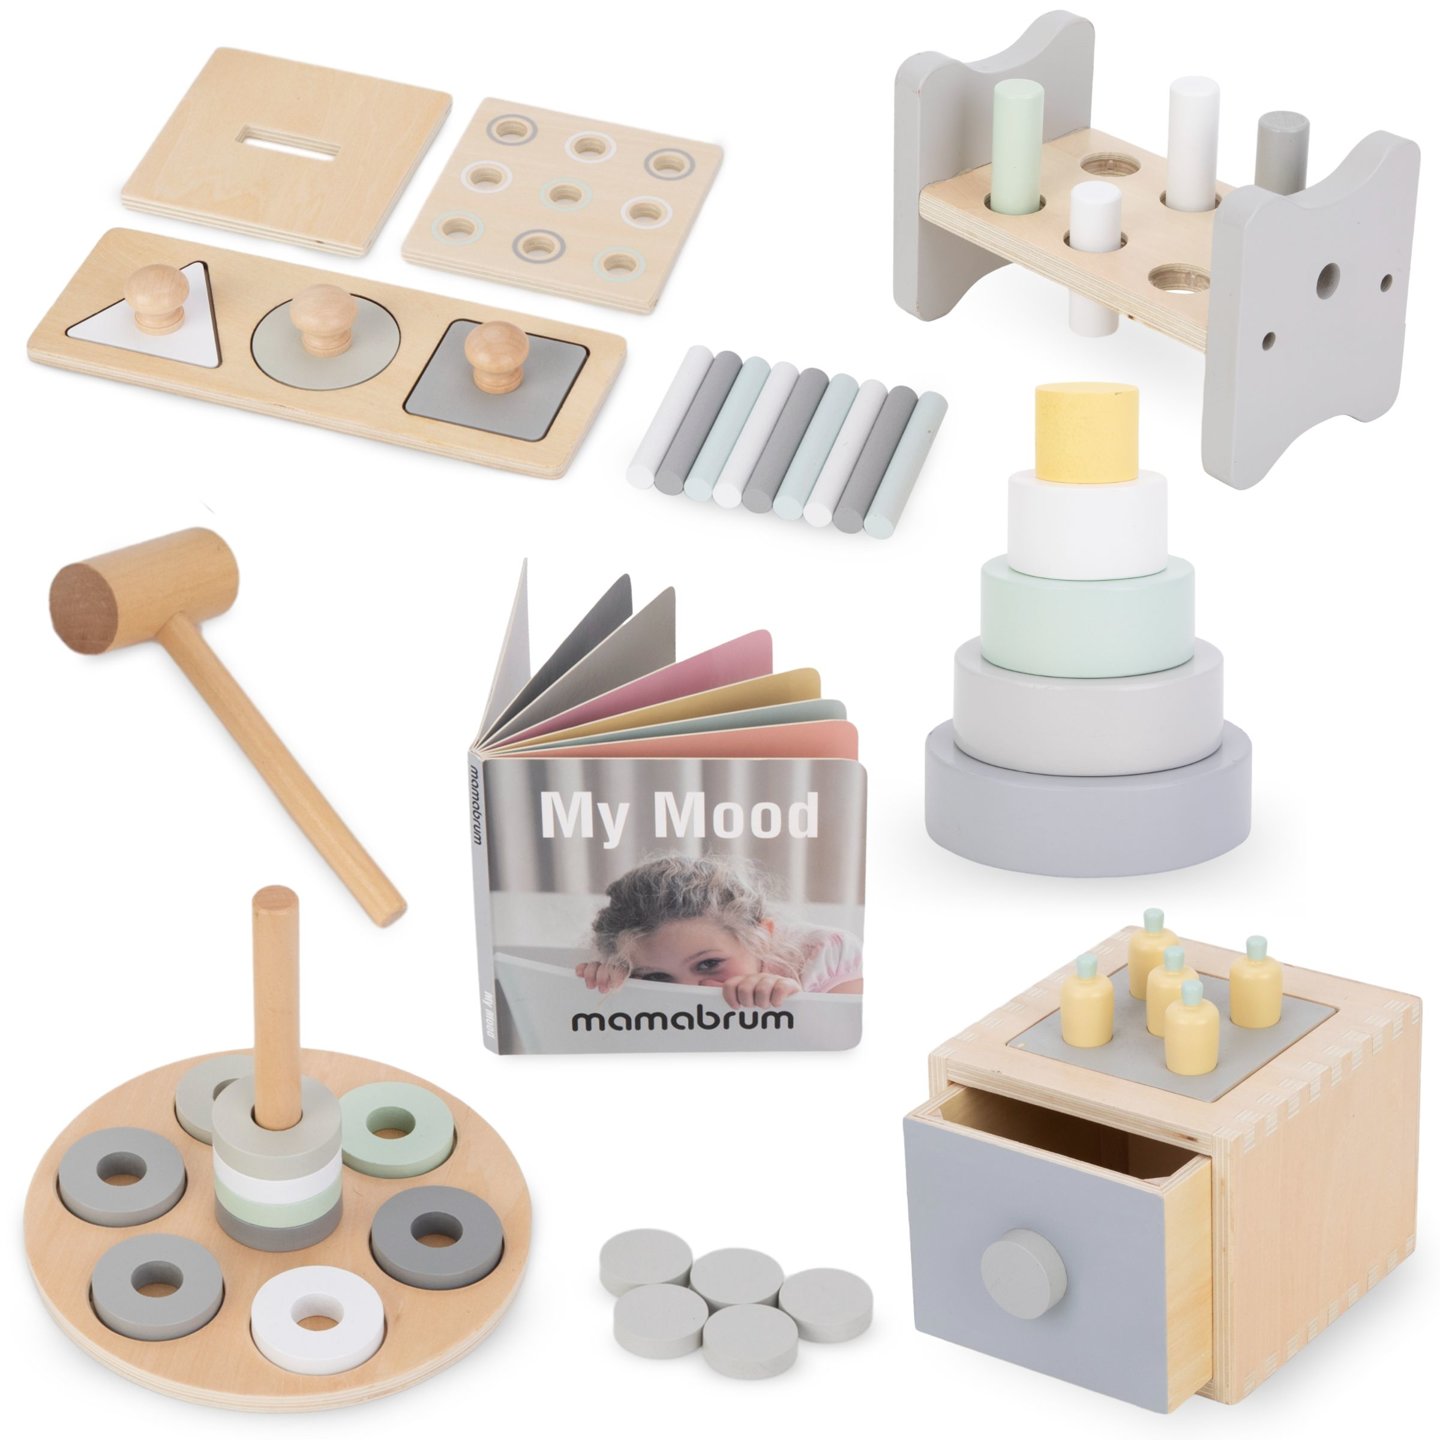 Pudełko edukacyjne Montessori dla małych dzieci - 6 zabawek